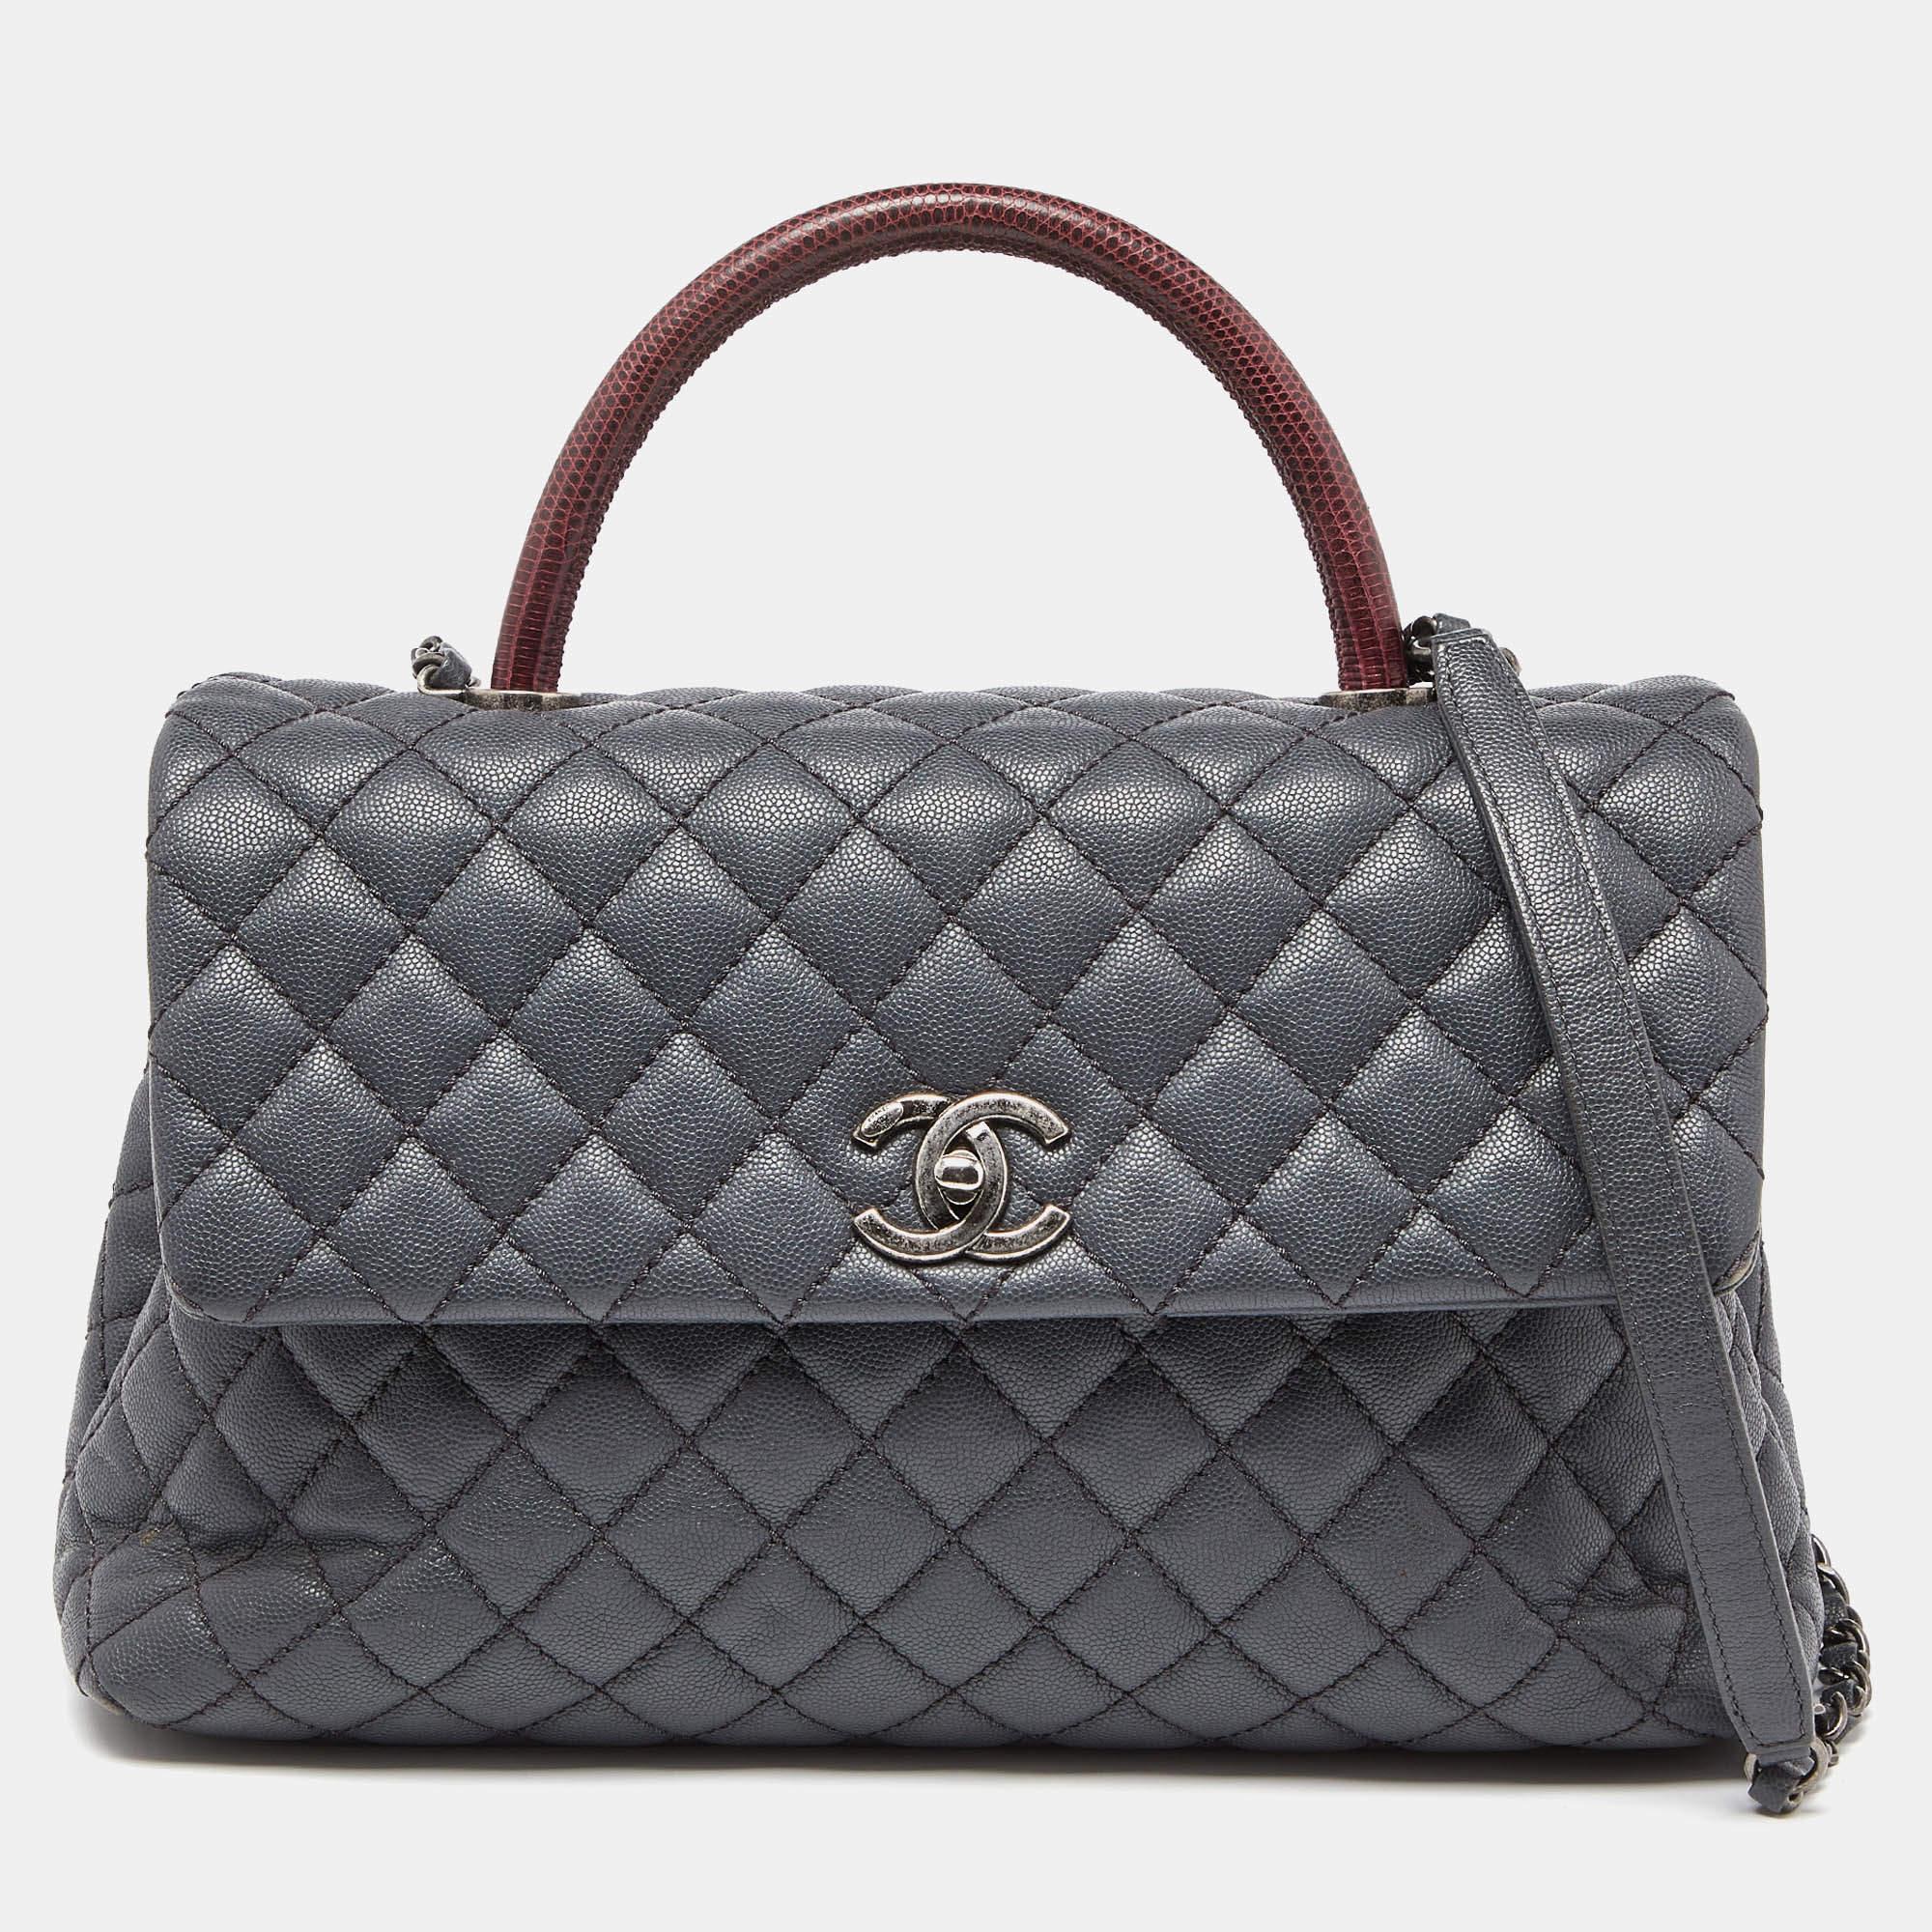 Chanel Medium Coco Top Handle Bag aus grauem/rotem Kaviarleder und Eidechsenleder 6